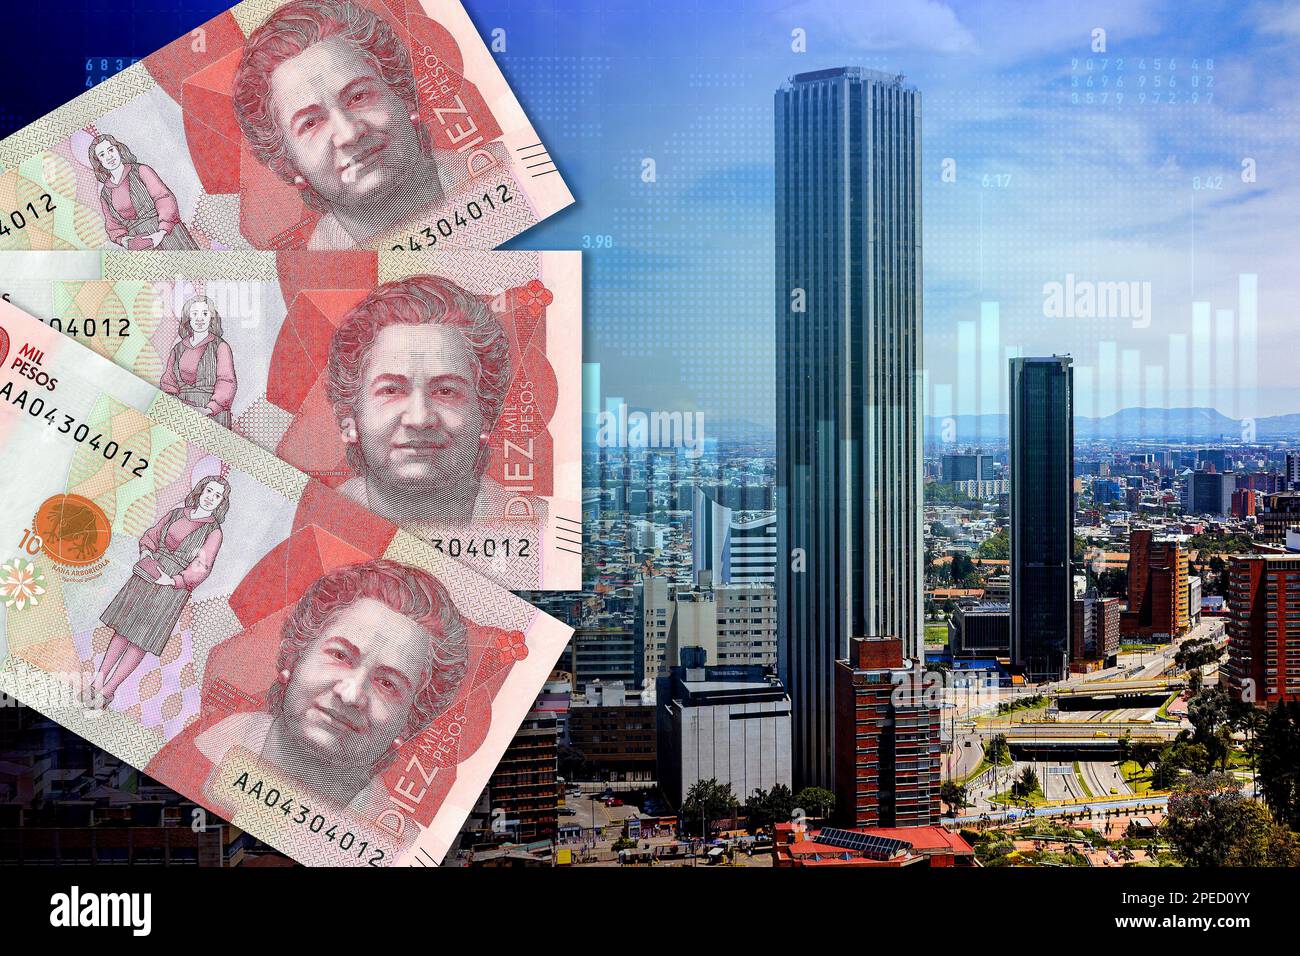 Billets de 10 000 pesos colombiens en espèces, indicateurs boursiers et vue panoramique de la ville de Bogotá (argent, affaires, inflation, succès, crise) Banque D'Images